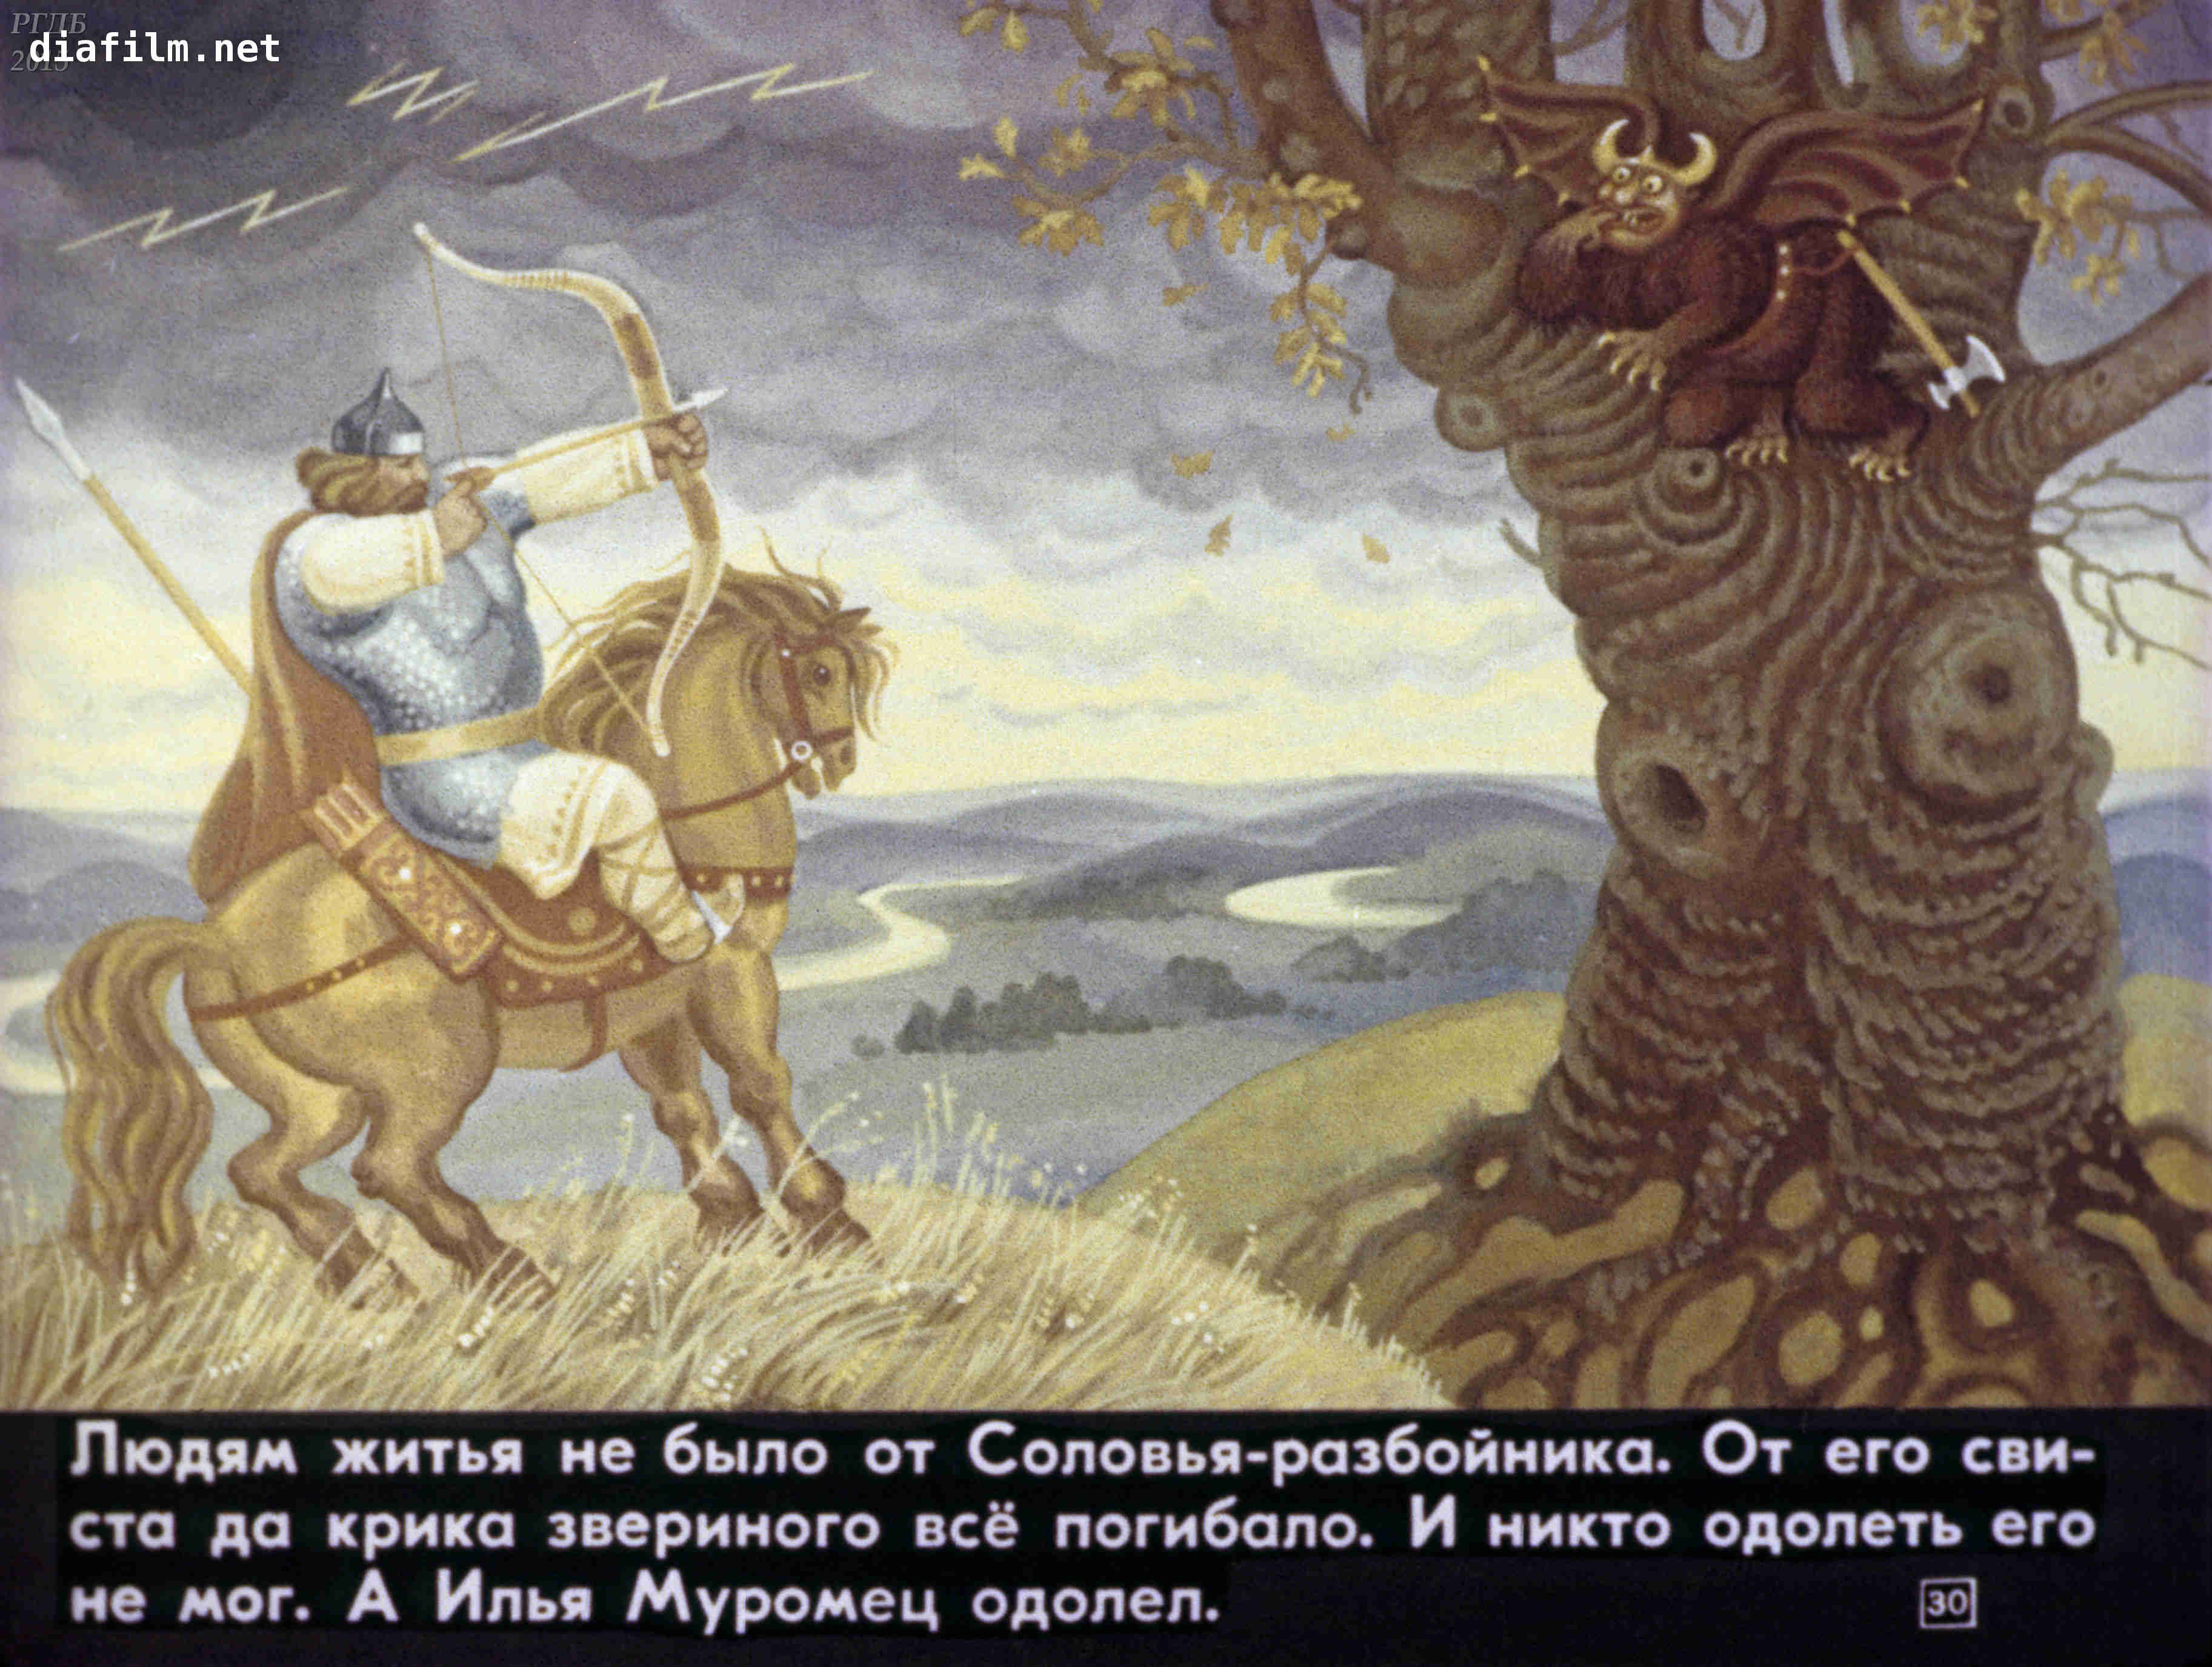 Читать сказку илья муромец и кáлин-царь - русские былины и легенды, онлайн бесплатно с иллюстрациями.